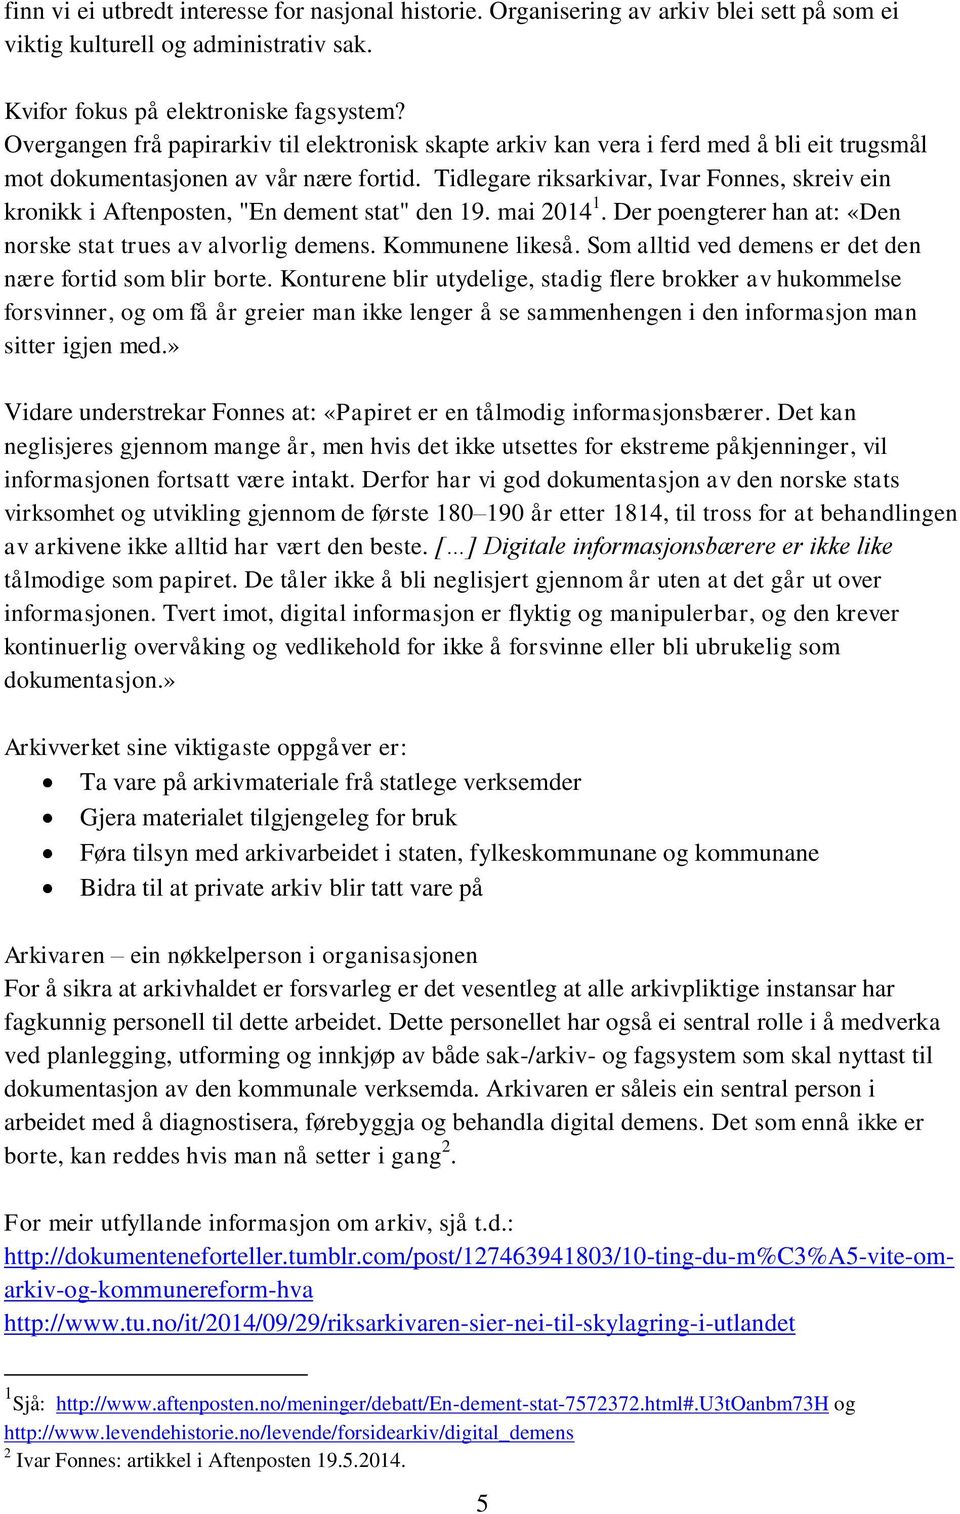 Tidlegare riksarkivar, Ivar Fonnes, skreiv ein kronikk i Aftenposten, "En dement stat" den 19. mai 2014 1. Der poengterer han at: «Den norske stat trues av alvorlig demens. Kommunene likeså.